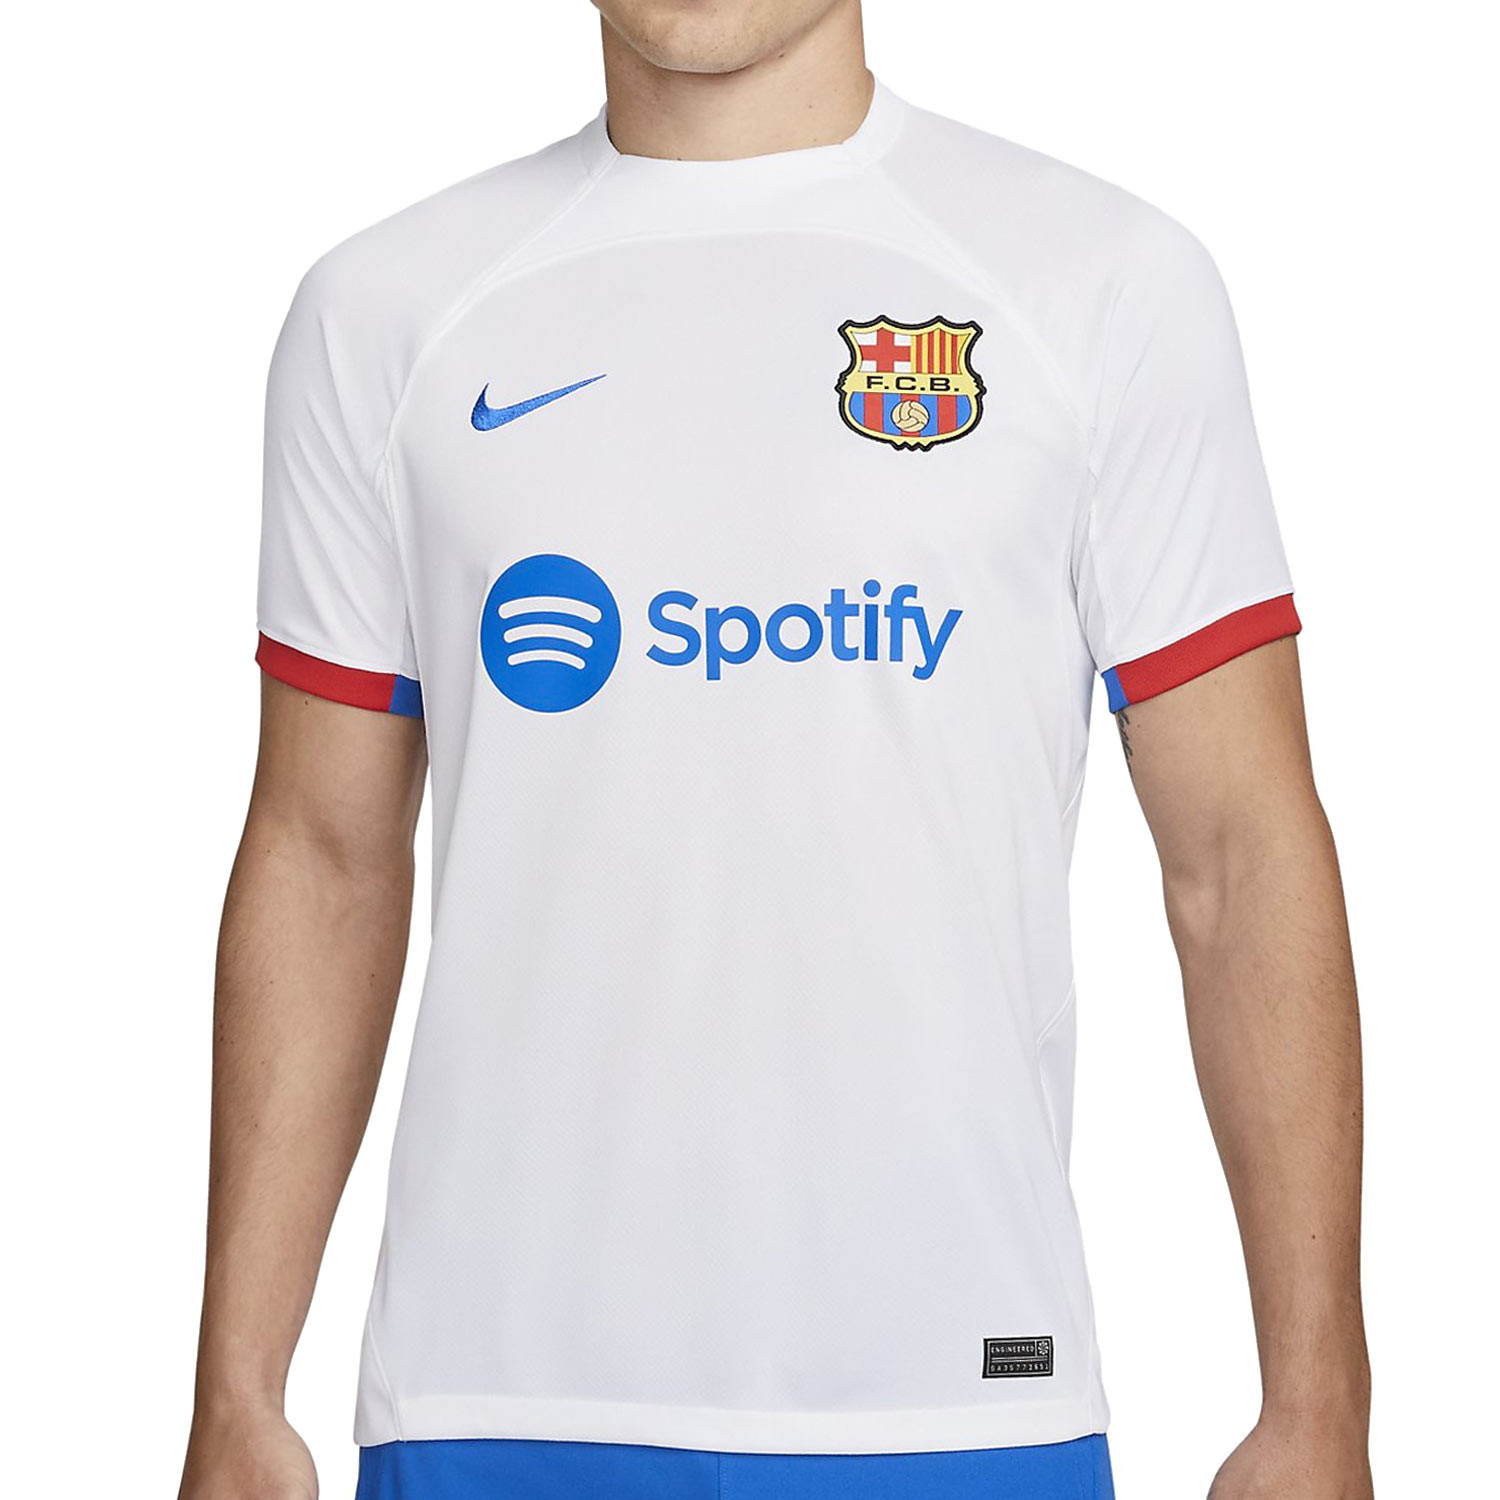 Así sería la nueva camiseta y el logo del Barça para su 125